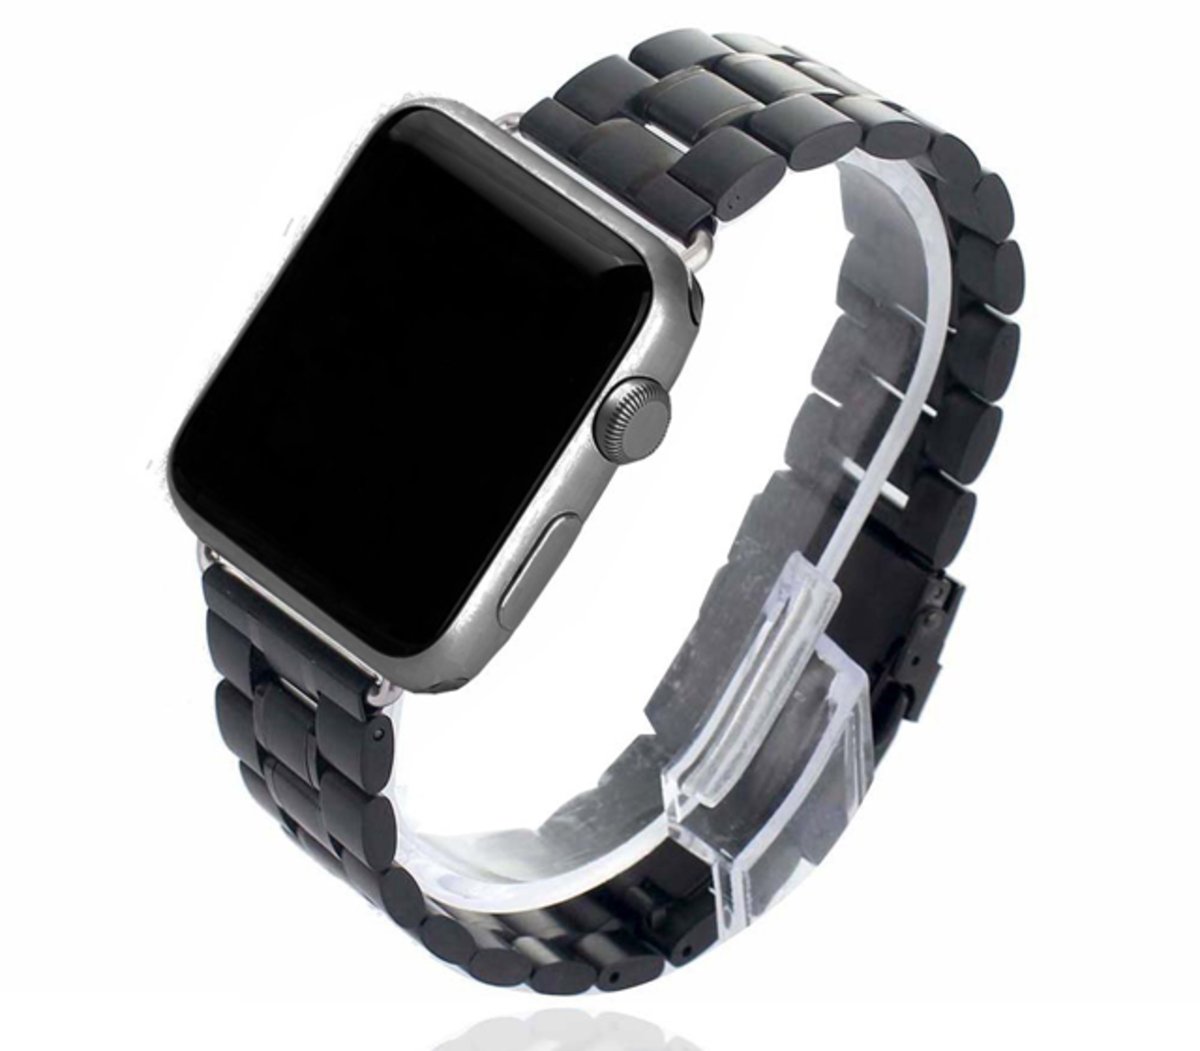  Mejores correas acero inoxidable Apple Watch.